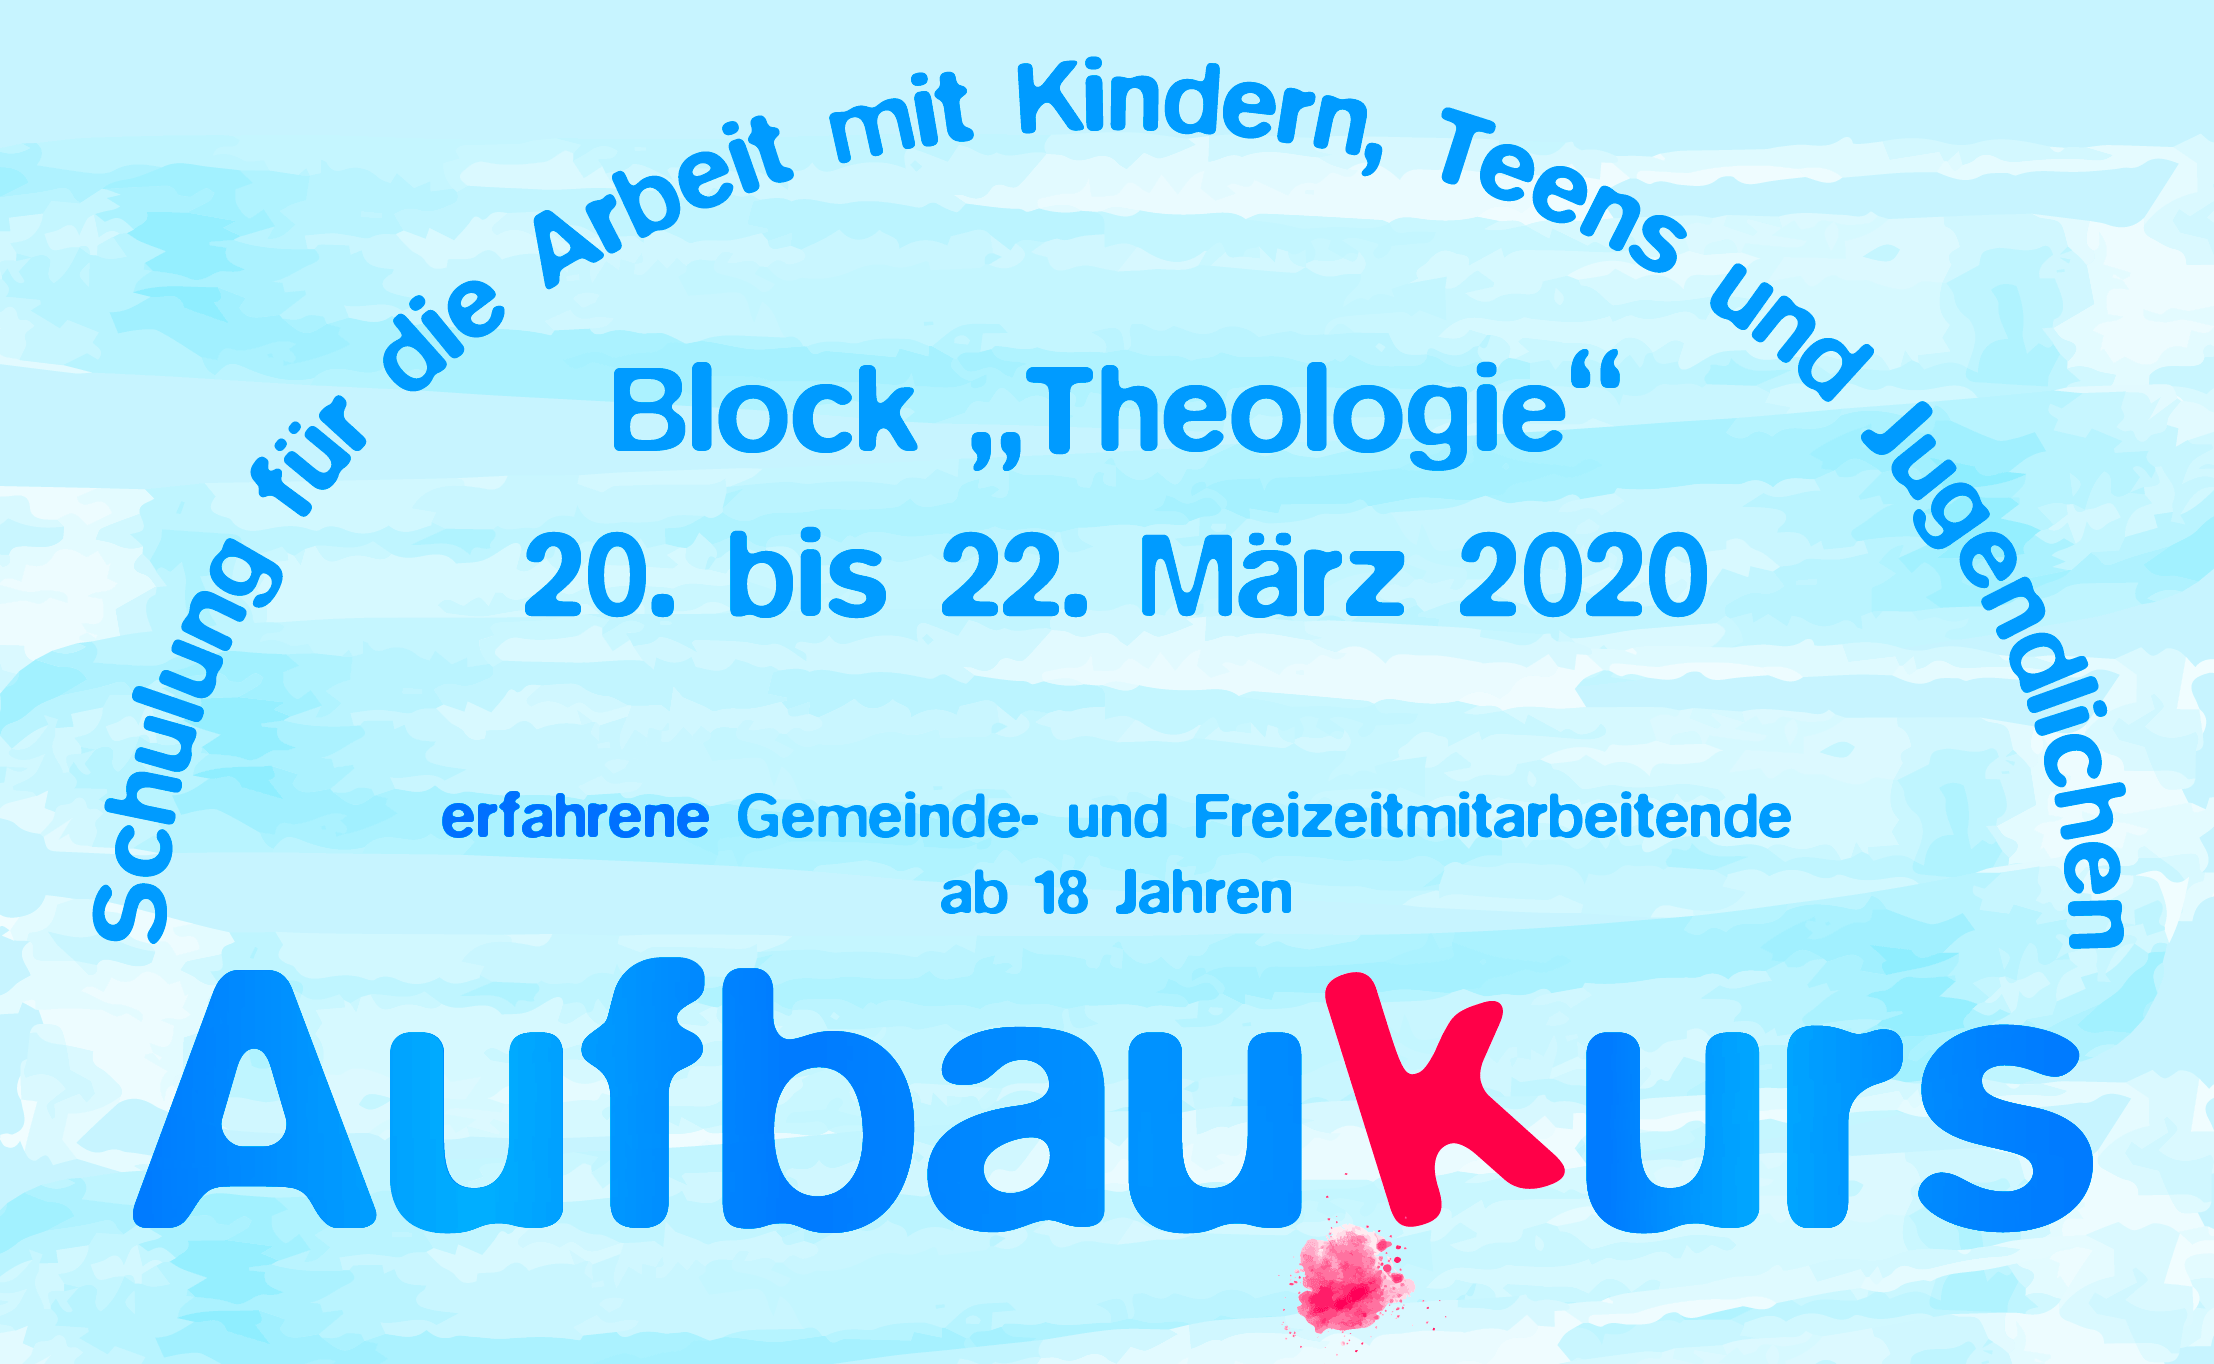 Aufbaukurs Block „Theologie“, Schulung für die Arbeit mit Kindern, Teens und Jugendlichen, erfahrene Gemeinde- und Freizeitmitarbeitende.